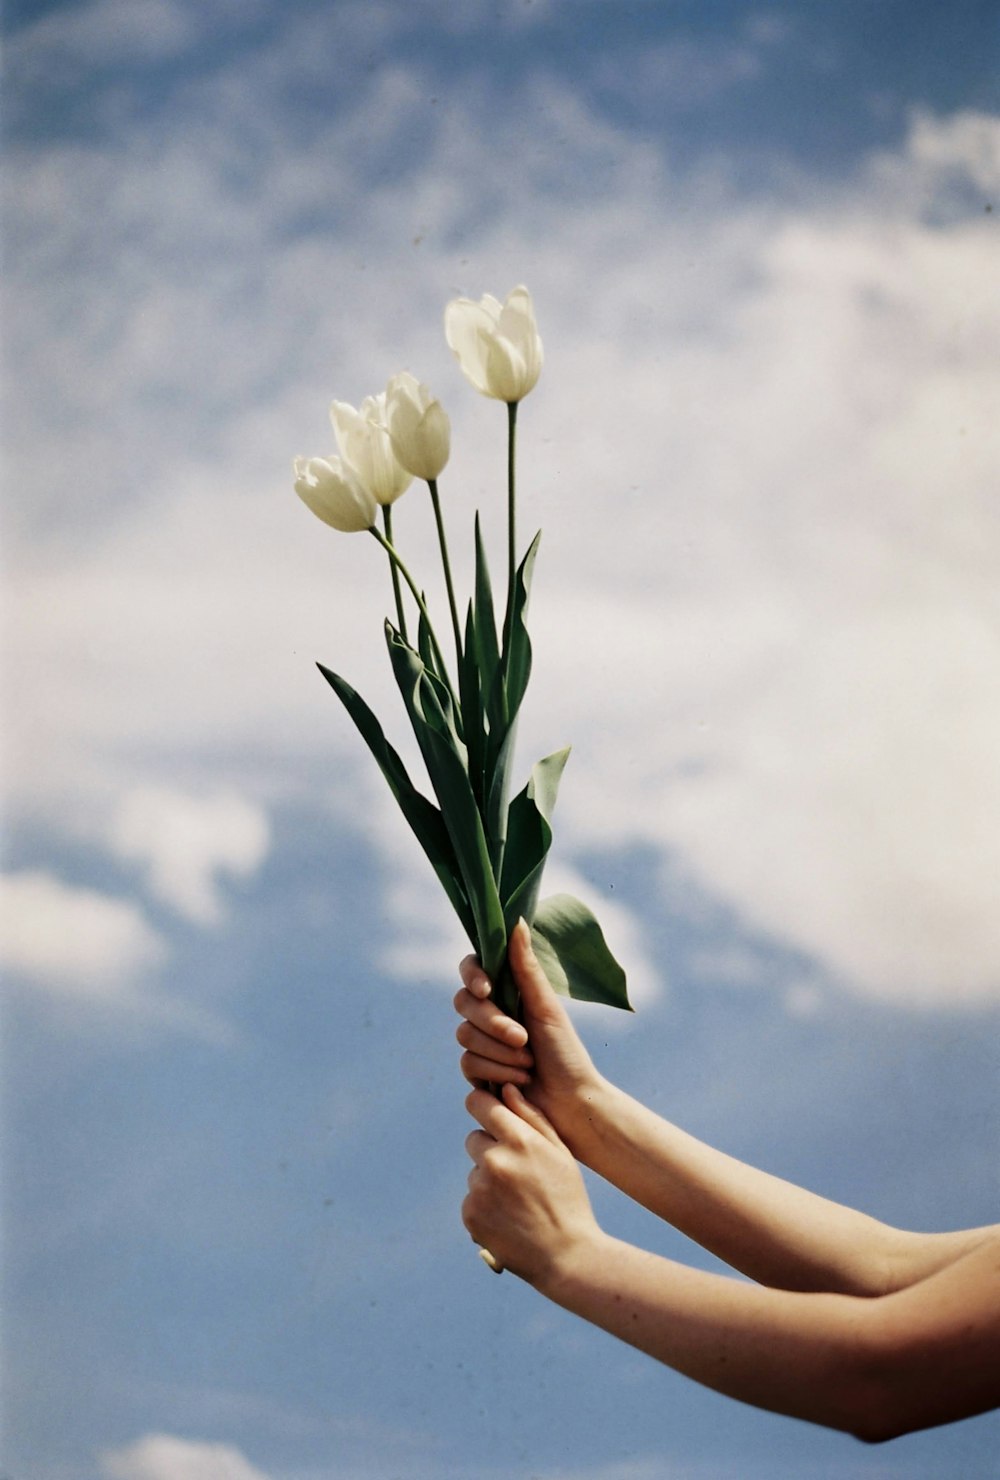 작은 흰색 꽃을 들고 있는 손